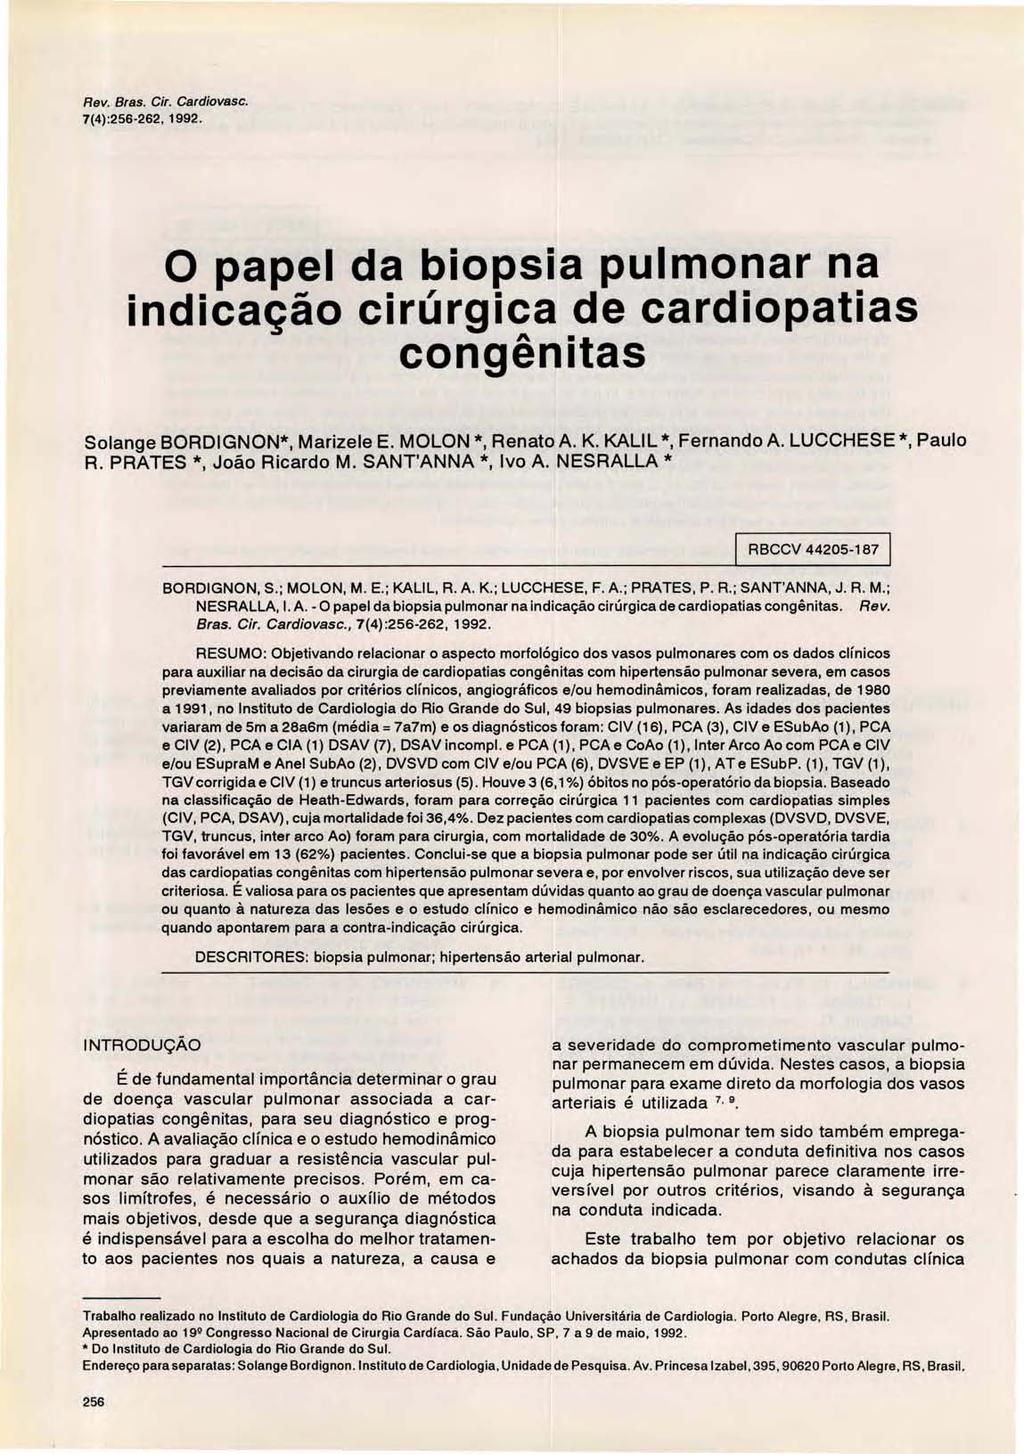 Rev. Bras. Cir. Cardiovasc. 7(4) :256-262, o papel da biopsia pulmonar na indicação cirúrgica de cardiopatias congênitas Solange BORDIGNON*, Marizele E. MOLON *, Renato A. K. KALI L *, Fernando A.